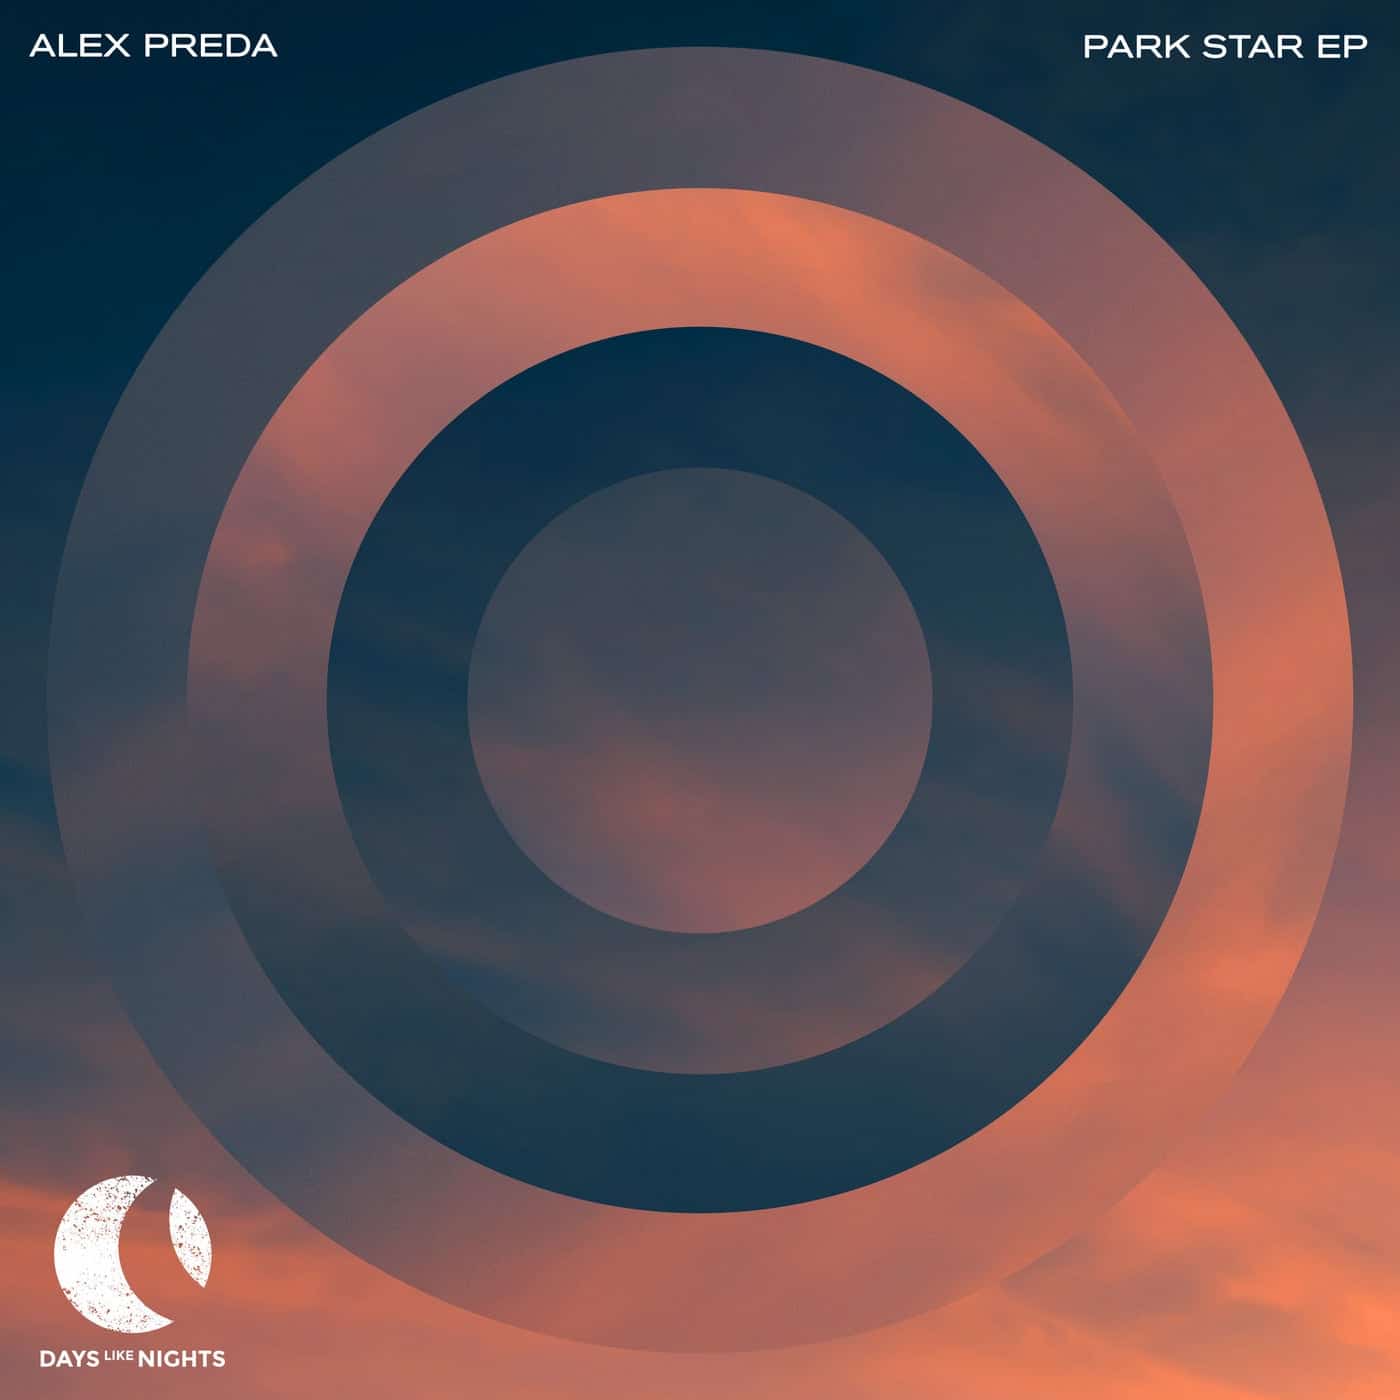 image cover: Alex Preda - Park Star on DAYS like NIGHTS